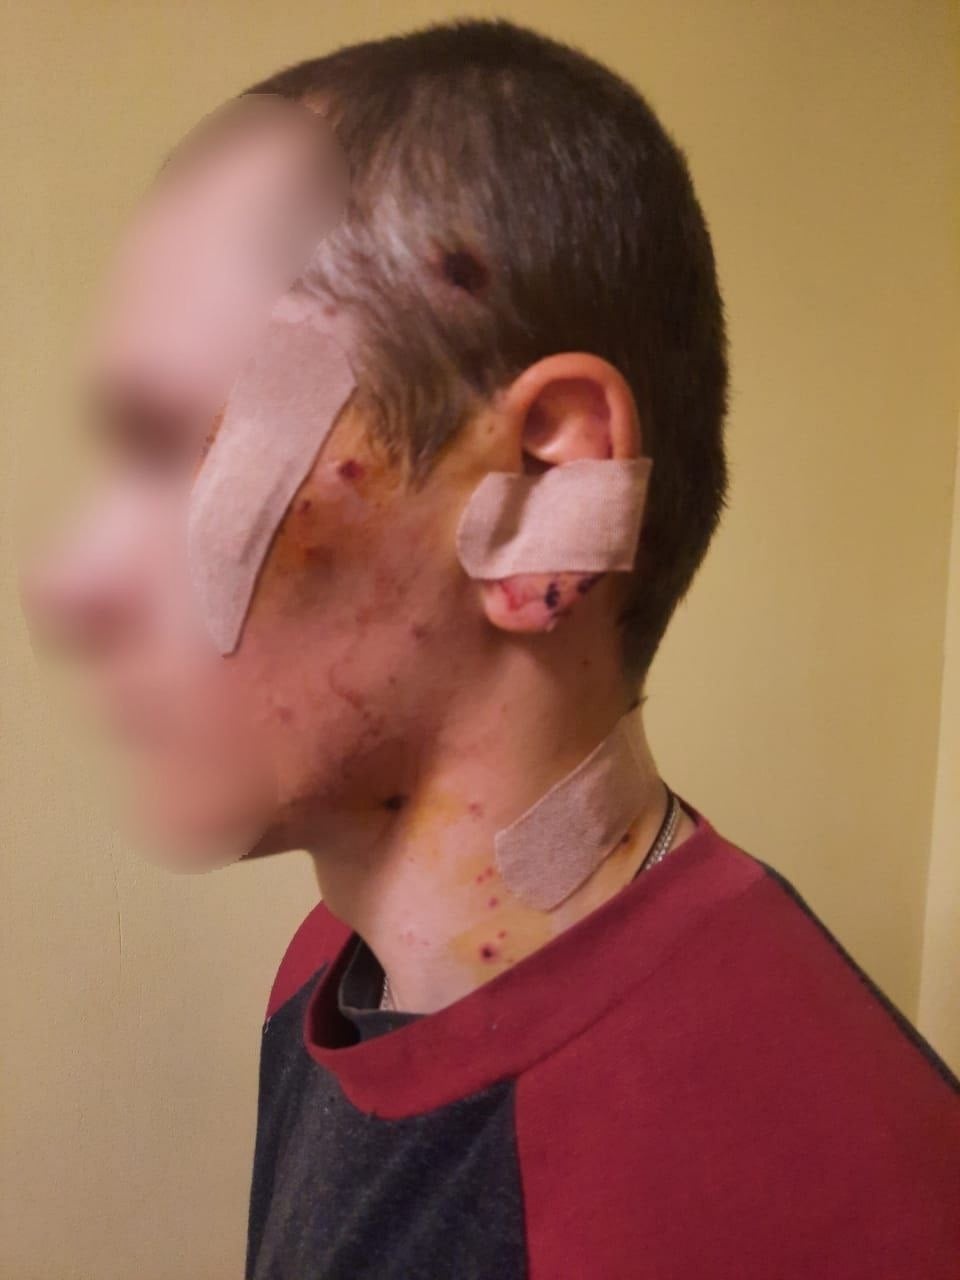 Біля Києва 17-річний хлопець підірвався на розтяжці